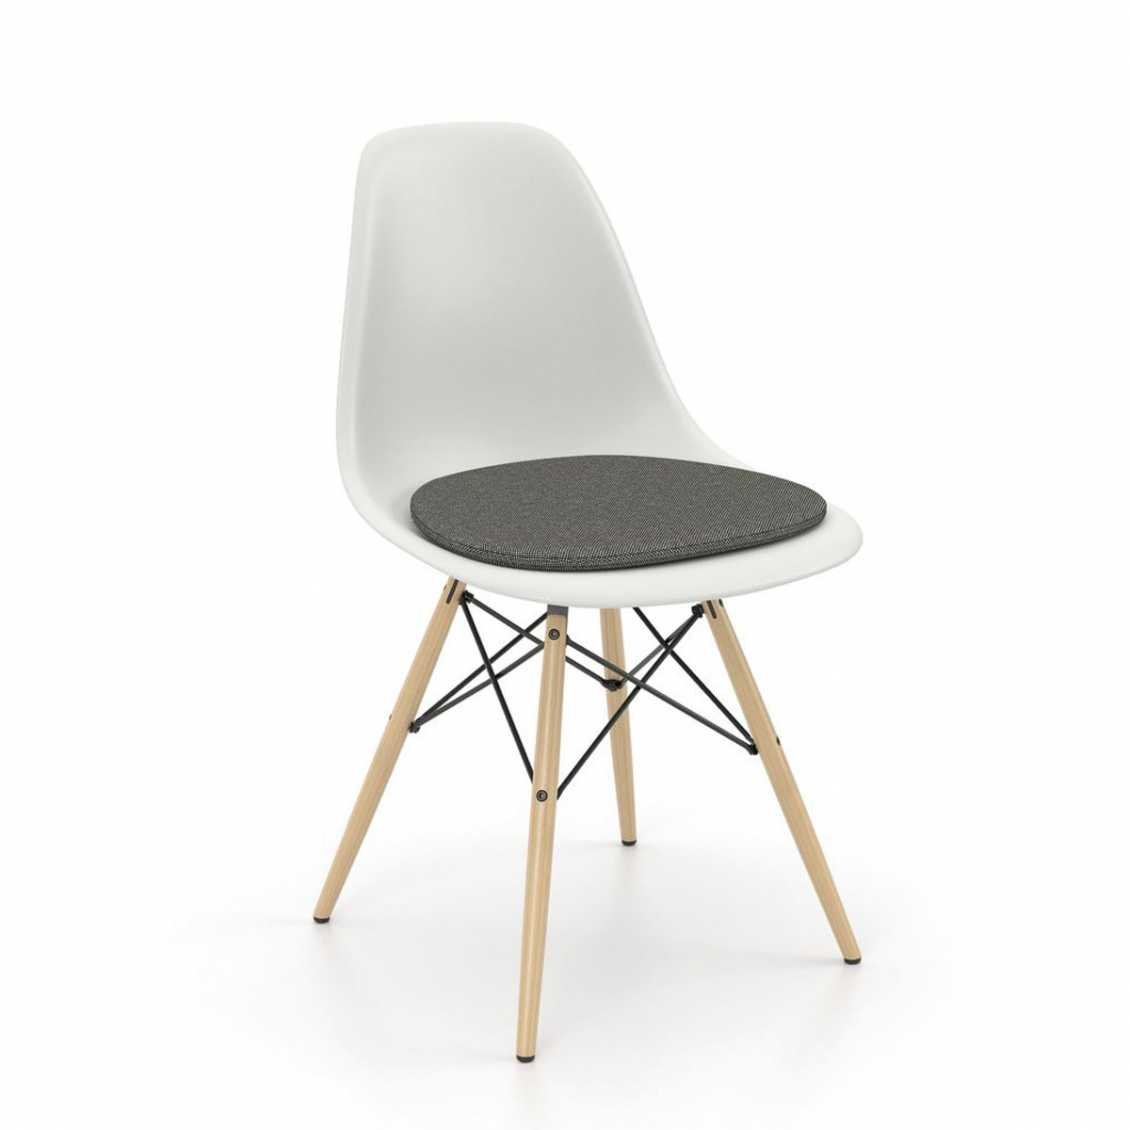 https://www.fundesign.nl/media/catalog/product/6/1/6185948_soft-seats-type-b-eames-plastic-side-chair-1_v_fullbleed_1440x_1.jpg